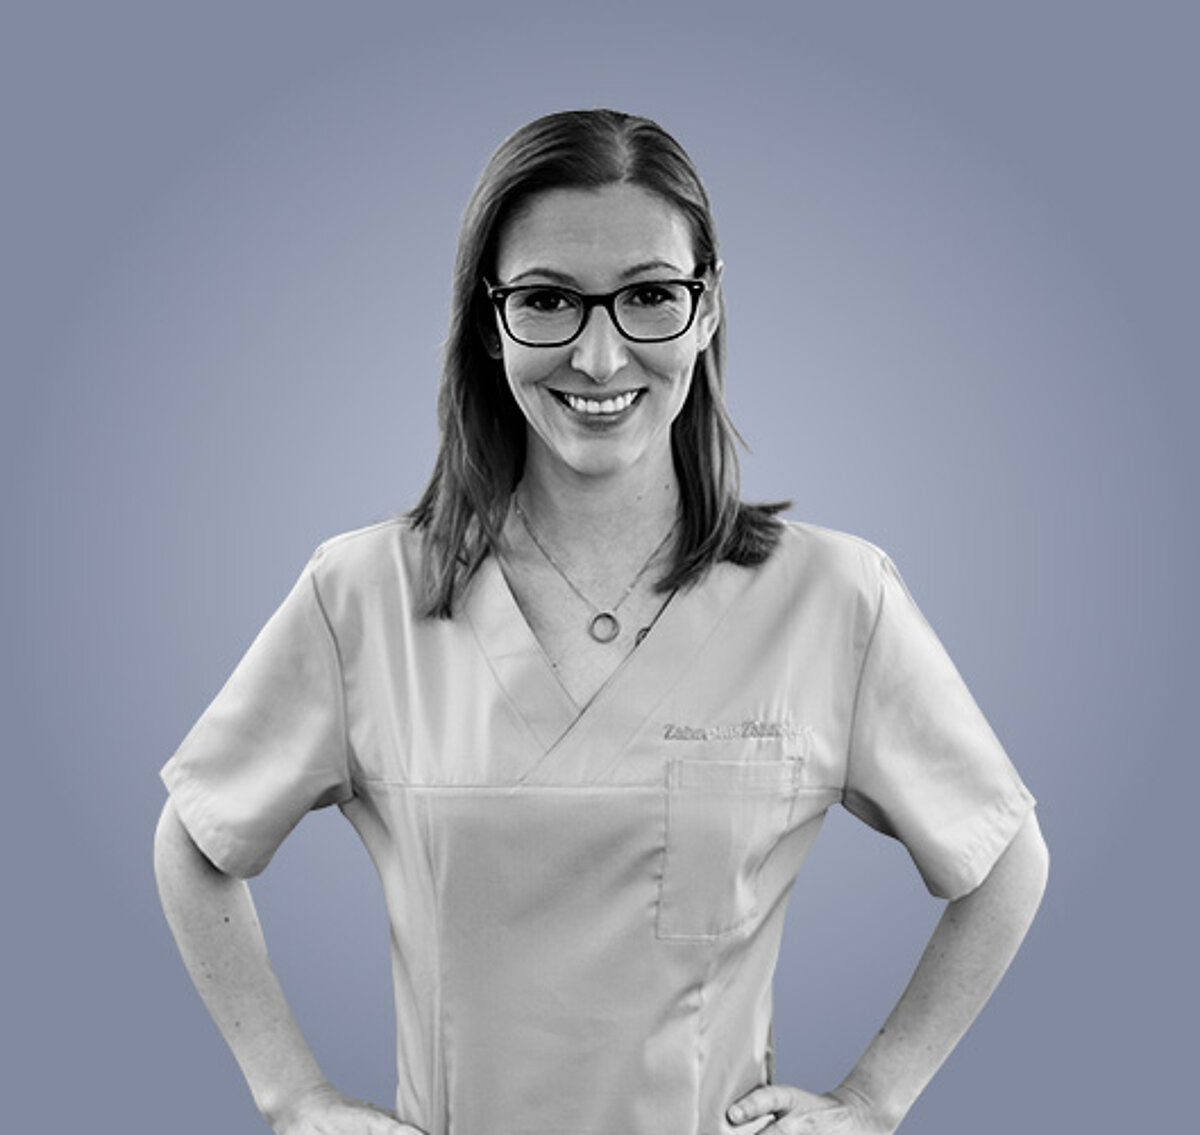 Nicole, zahnärztliche Mitarbeiterin in der Zahnarztpraxis zahnpluszähnchen in Nürnberg